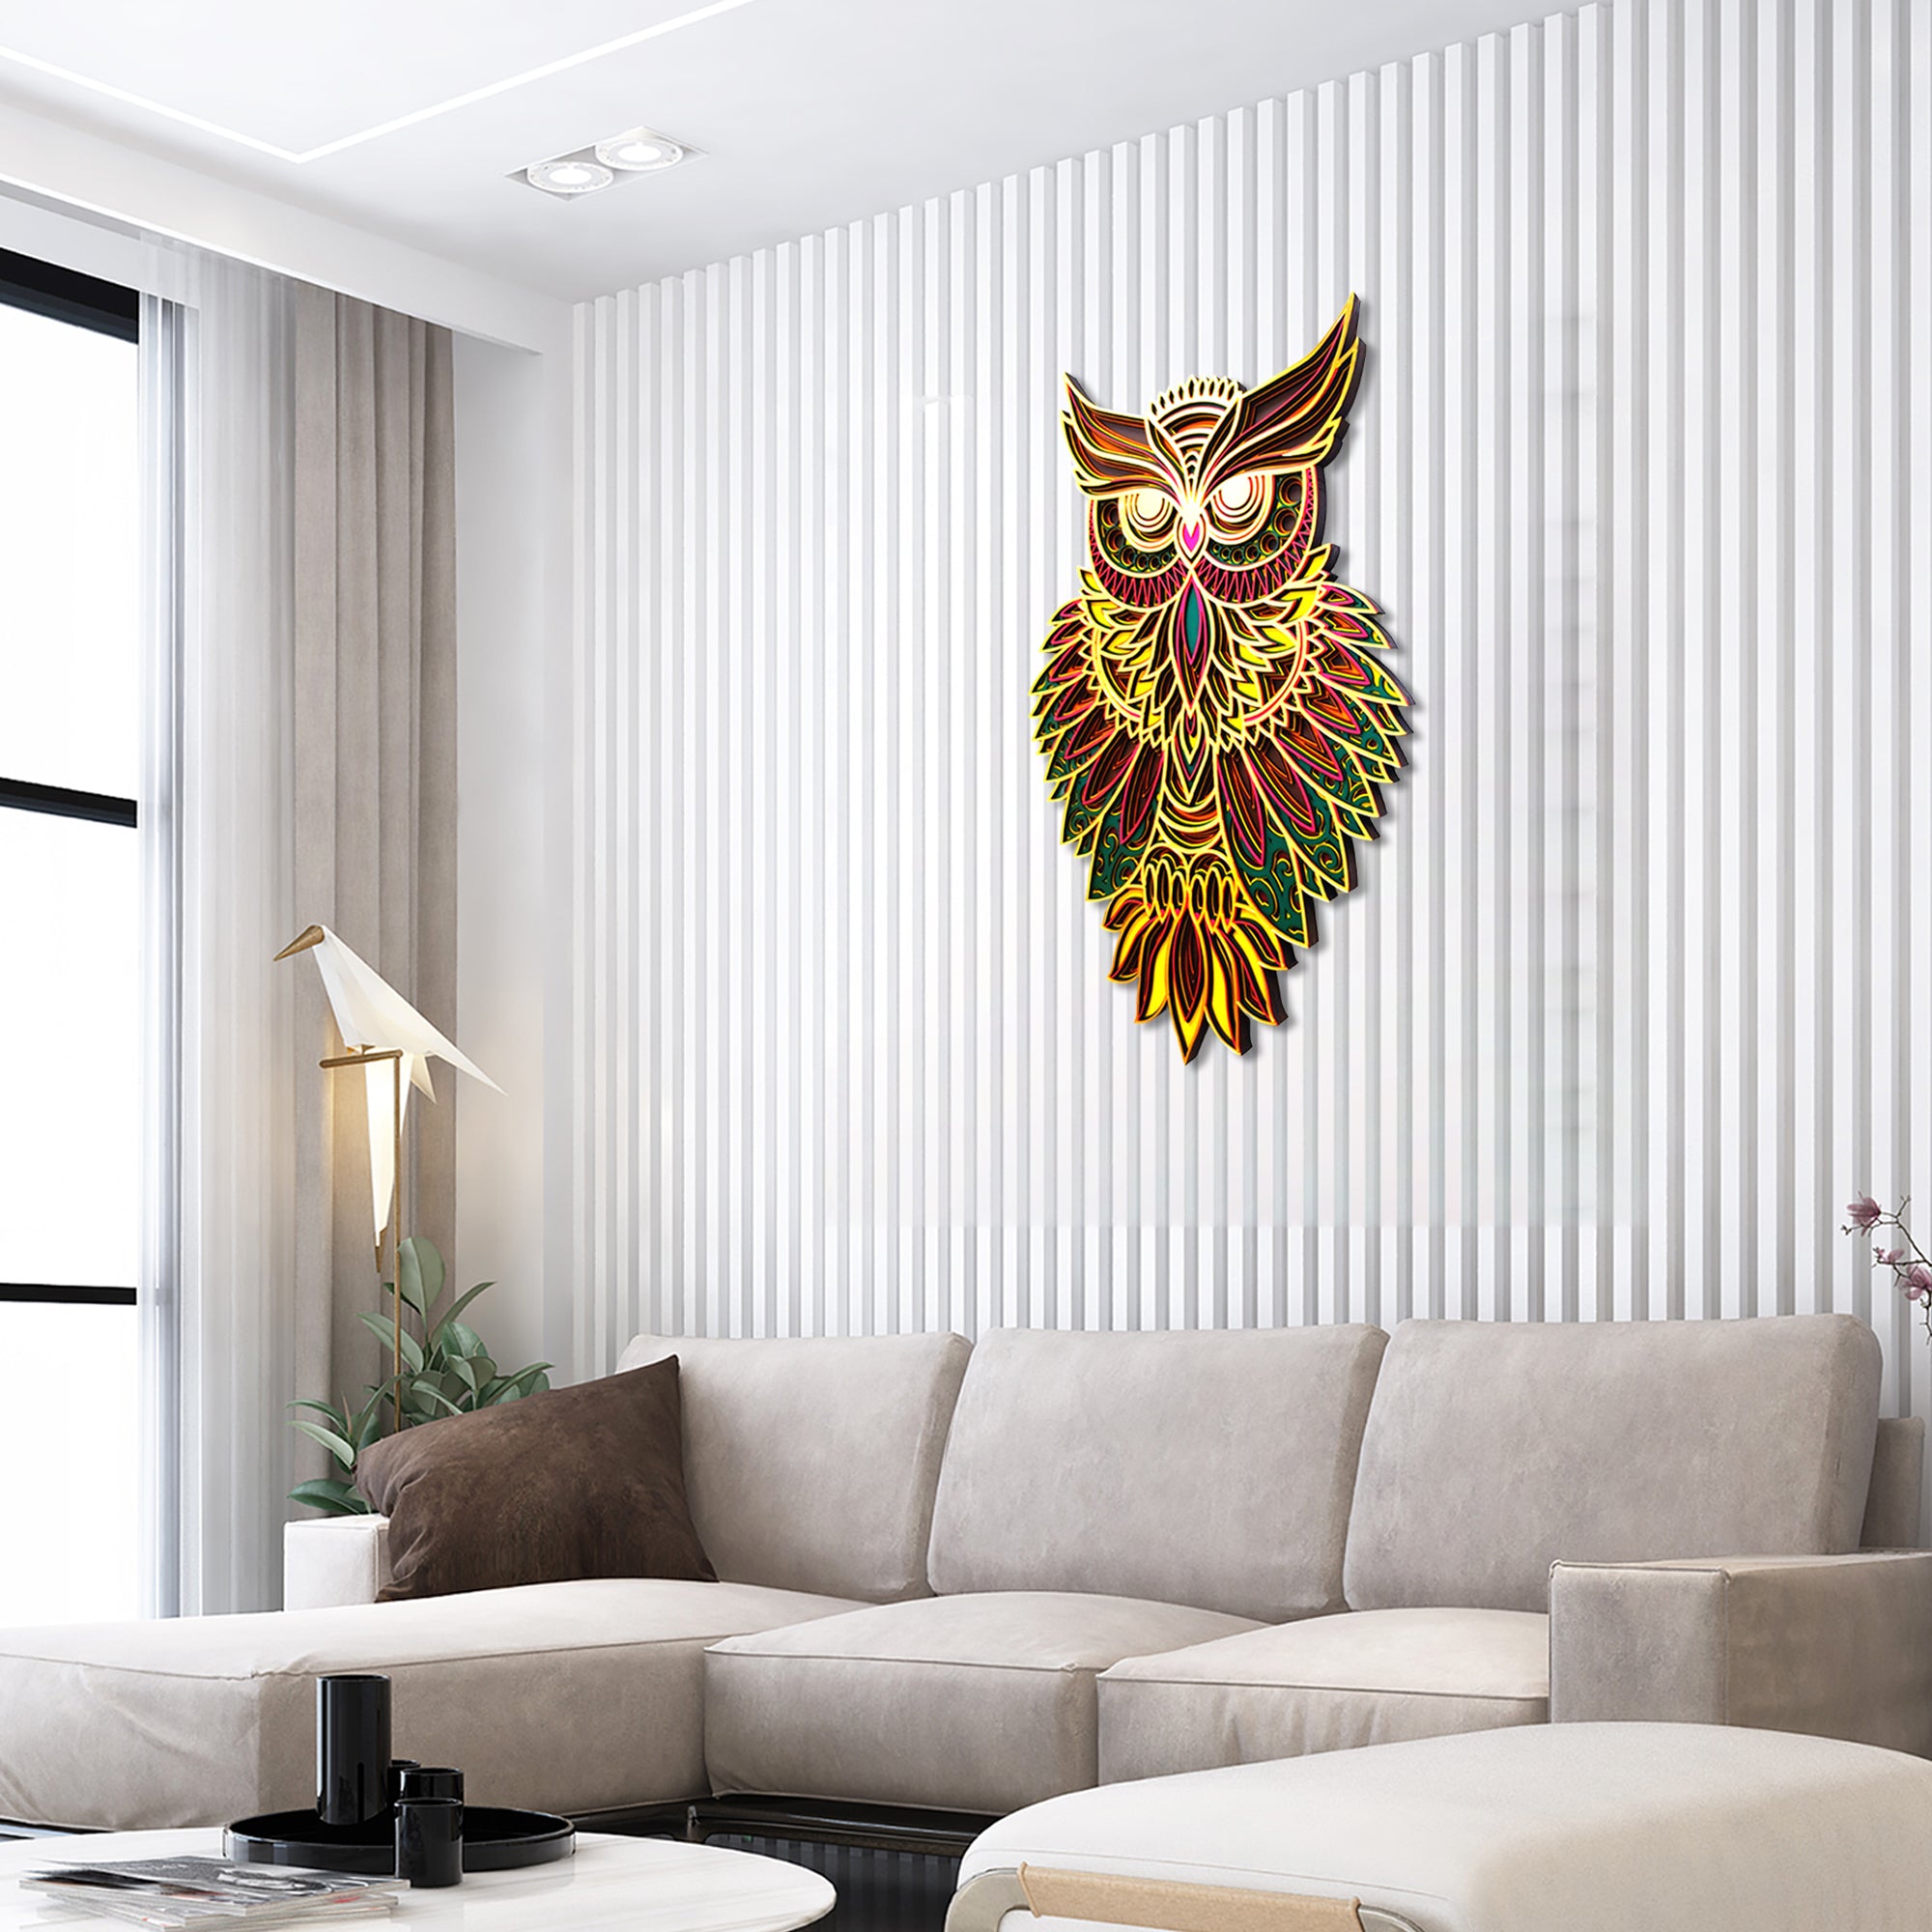 3D Owl Wall Decor